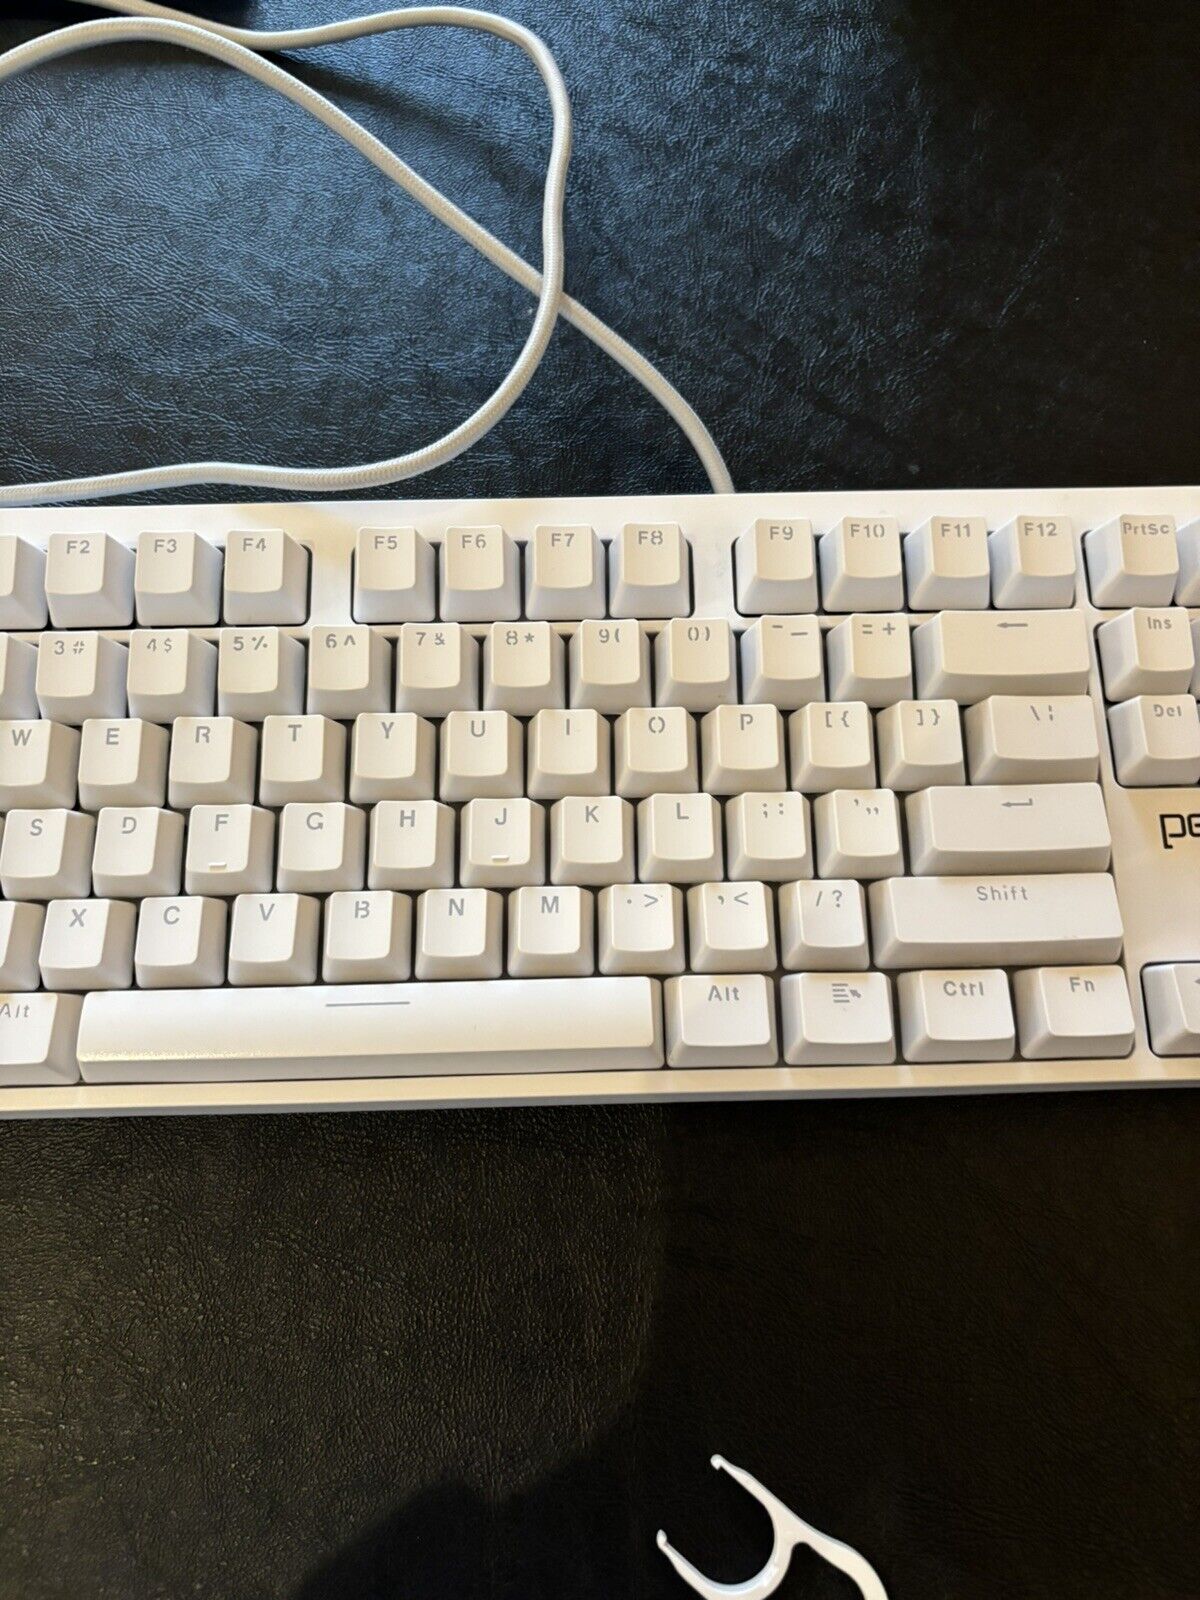 Periphio RGB White Gaming Keyboard 100% Keyboard - Full Size